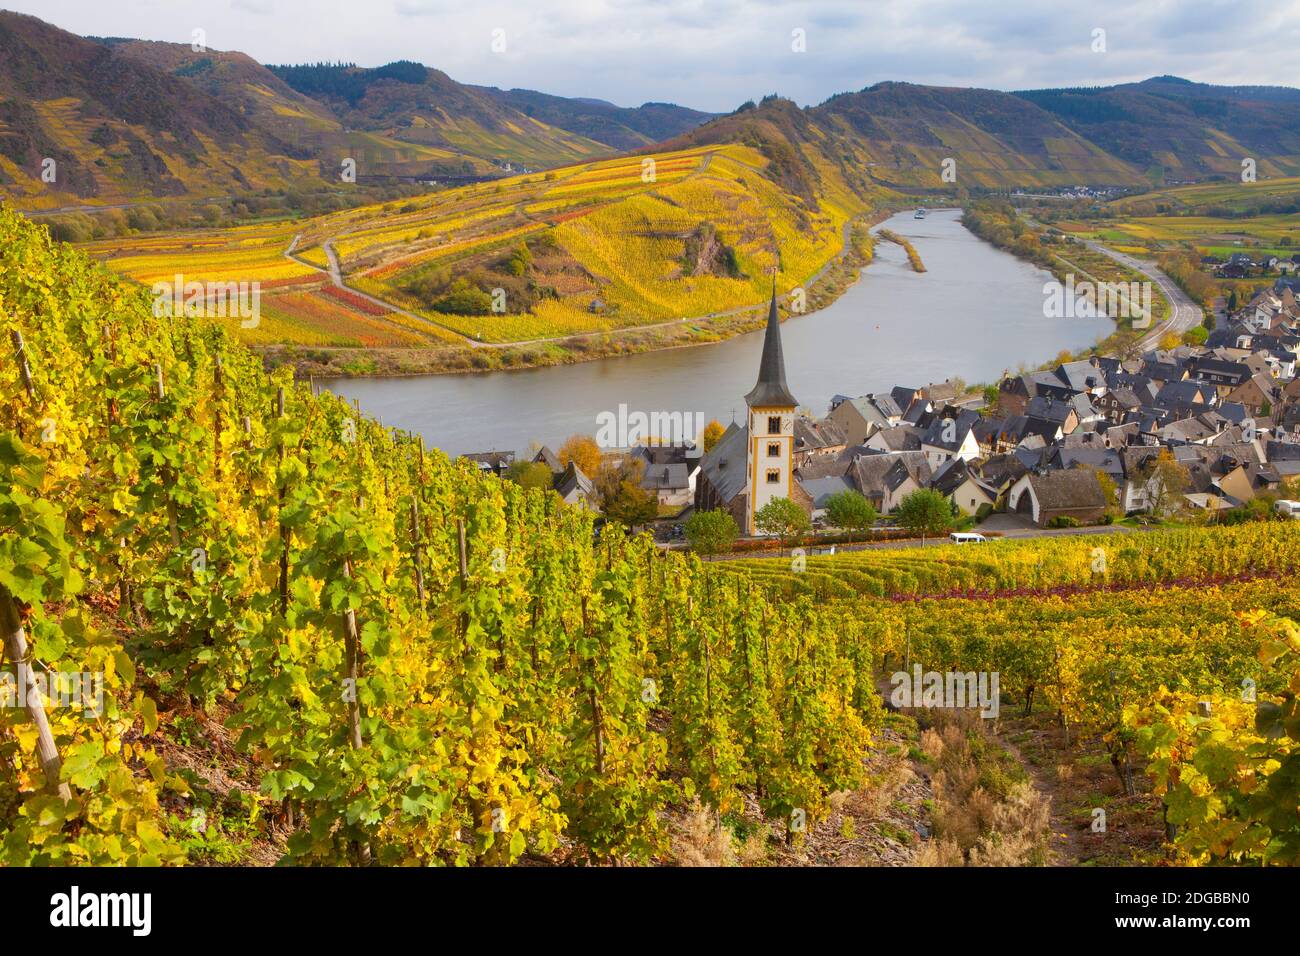 Vue panoramique sur les vignobles avec ville le long de la rivière, Bremmm, Mosel River, Calmont, Rhénanie-Palatinat, Allemagne Banque D'Images